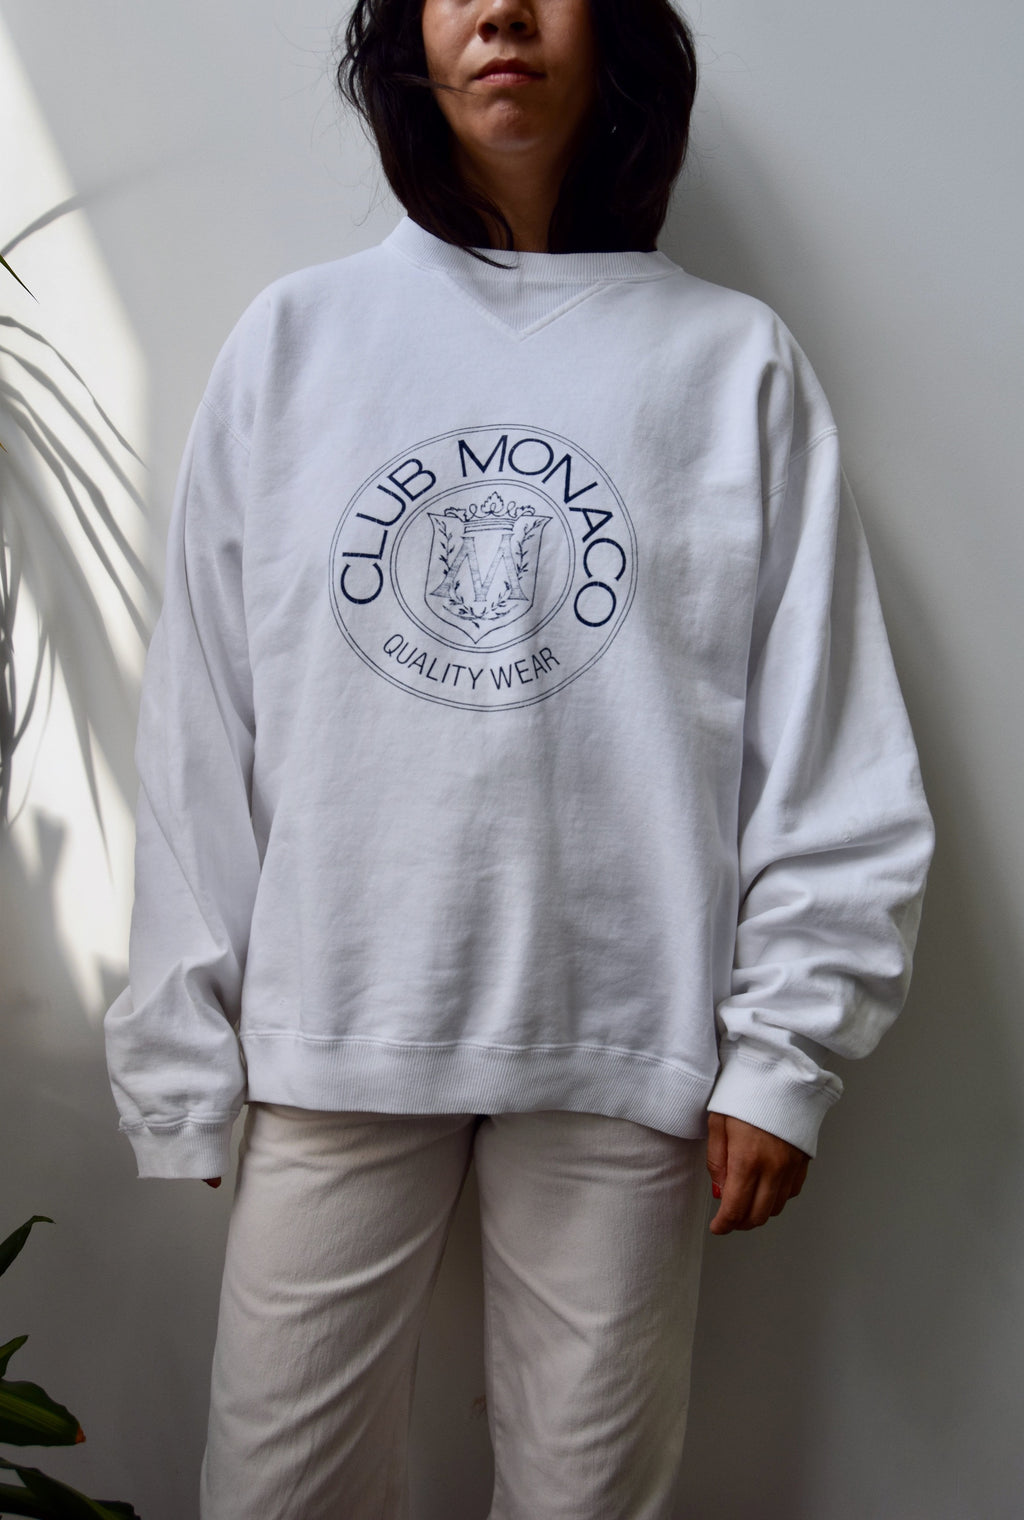 Club Monaco Classic Sweatshirt